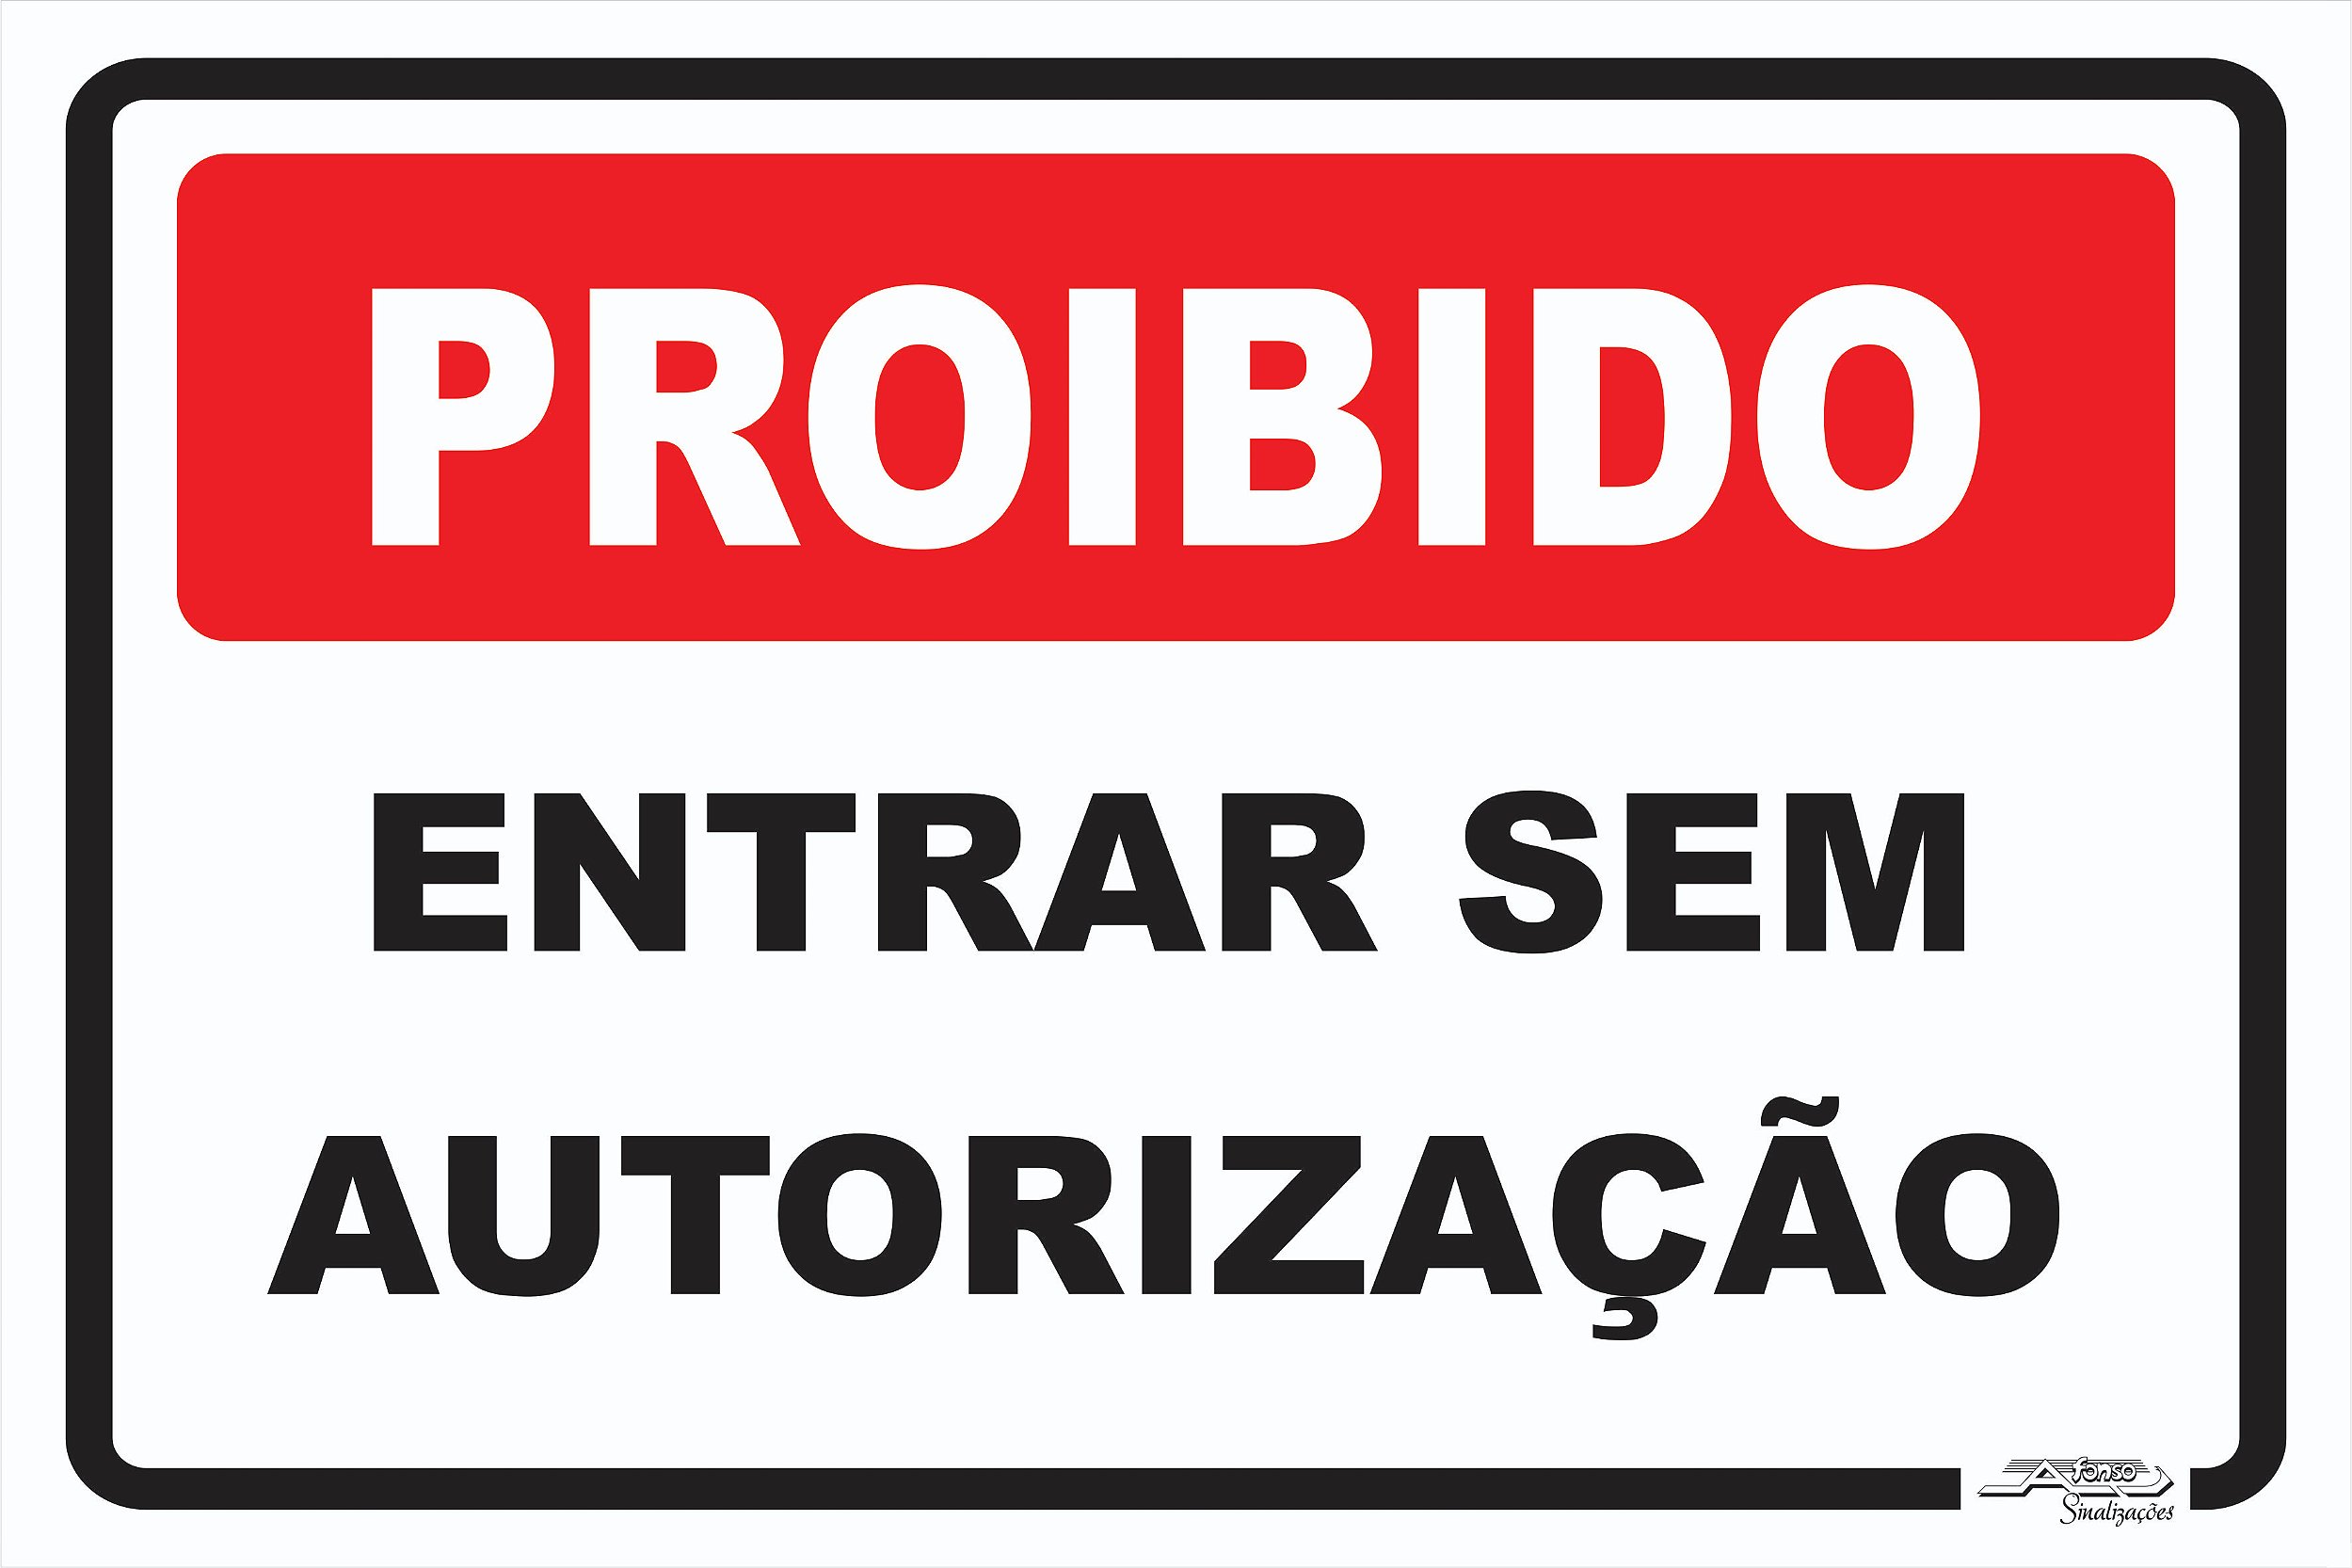 Placa Proibido Jogar Bola - Afonso Adesivos